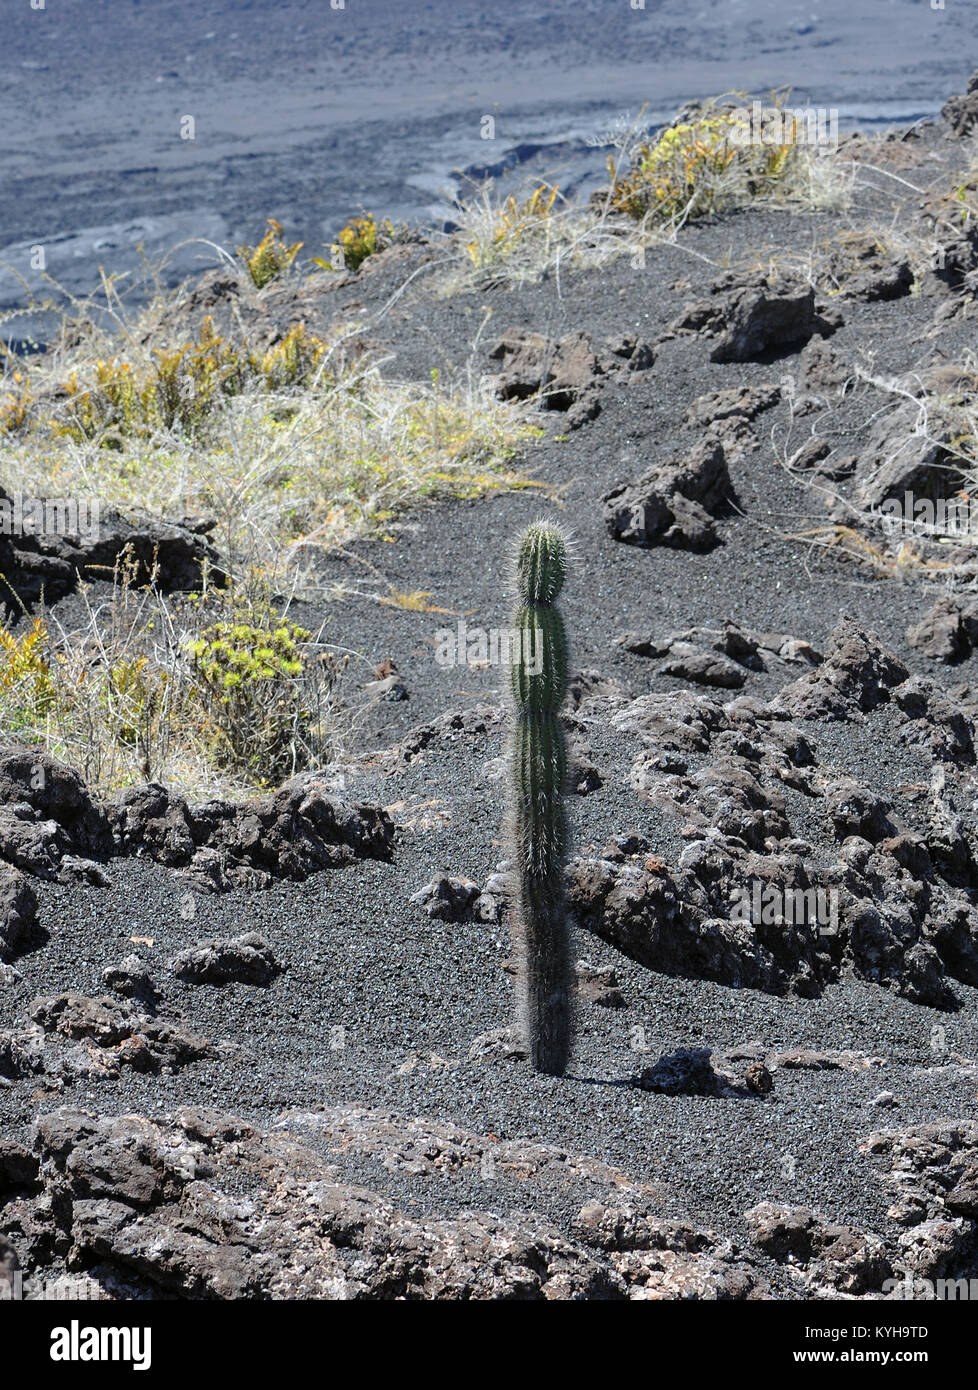 Pioneer specie di piante tra cui cactus, felci e licheni cominciano ad apparire sulla nuda lava nera pendici del vulcano Volcan Chico dopo il 1979 Foto Stock